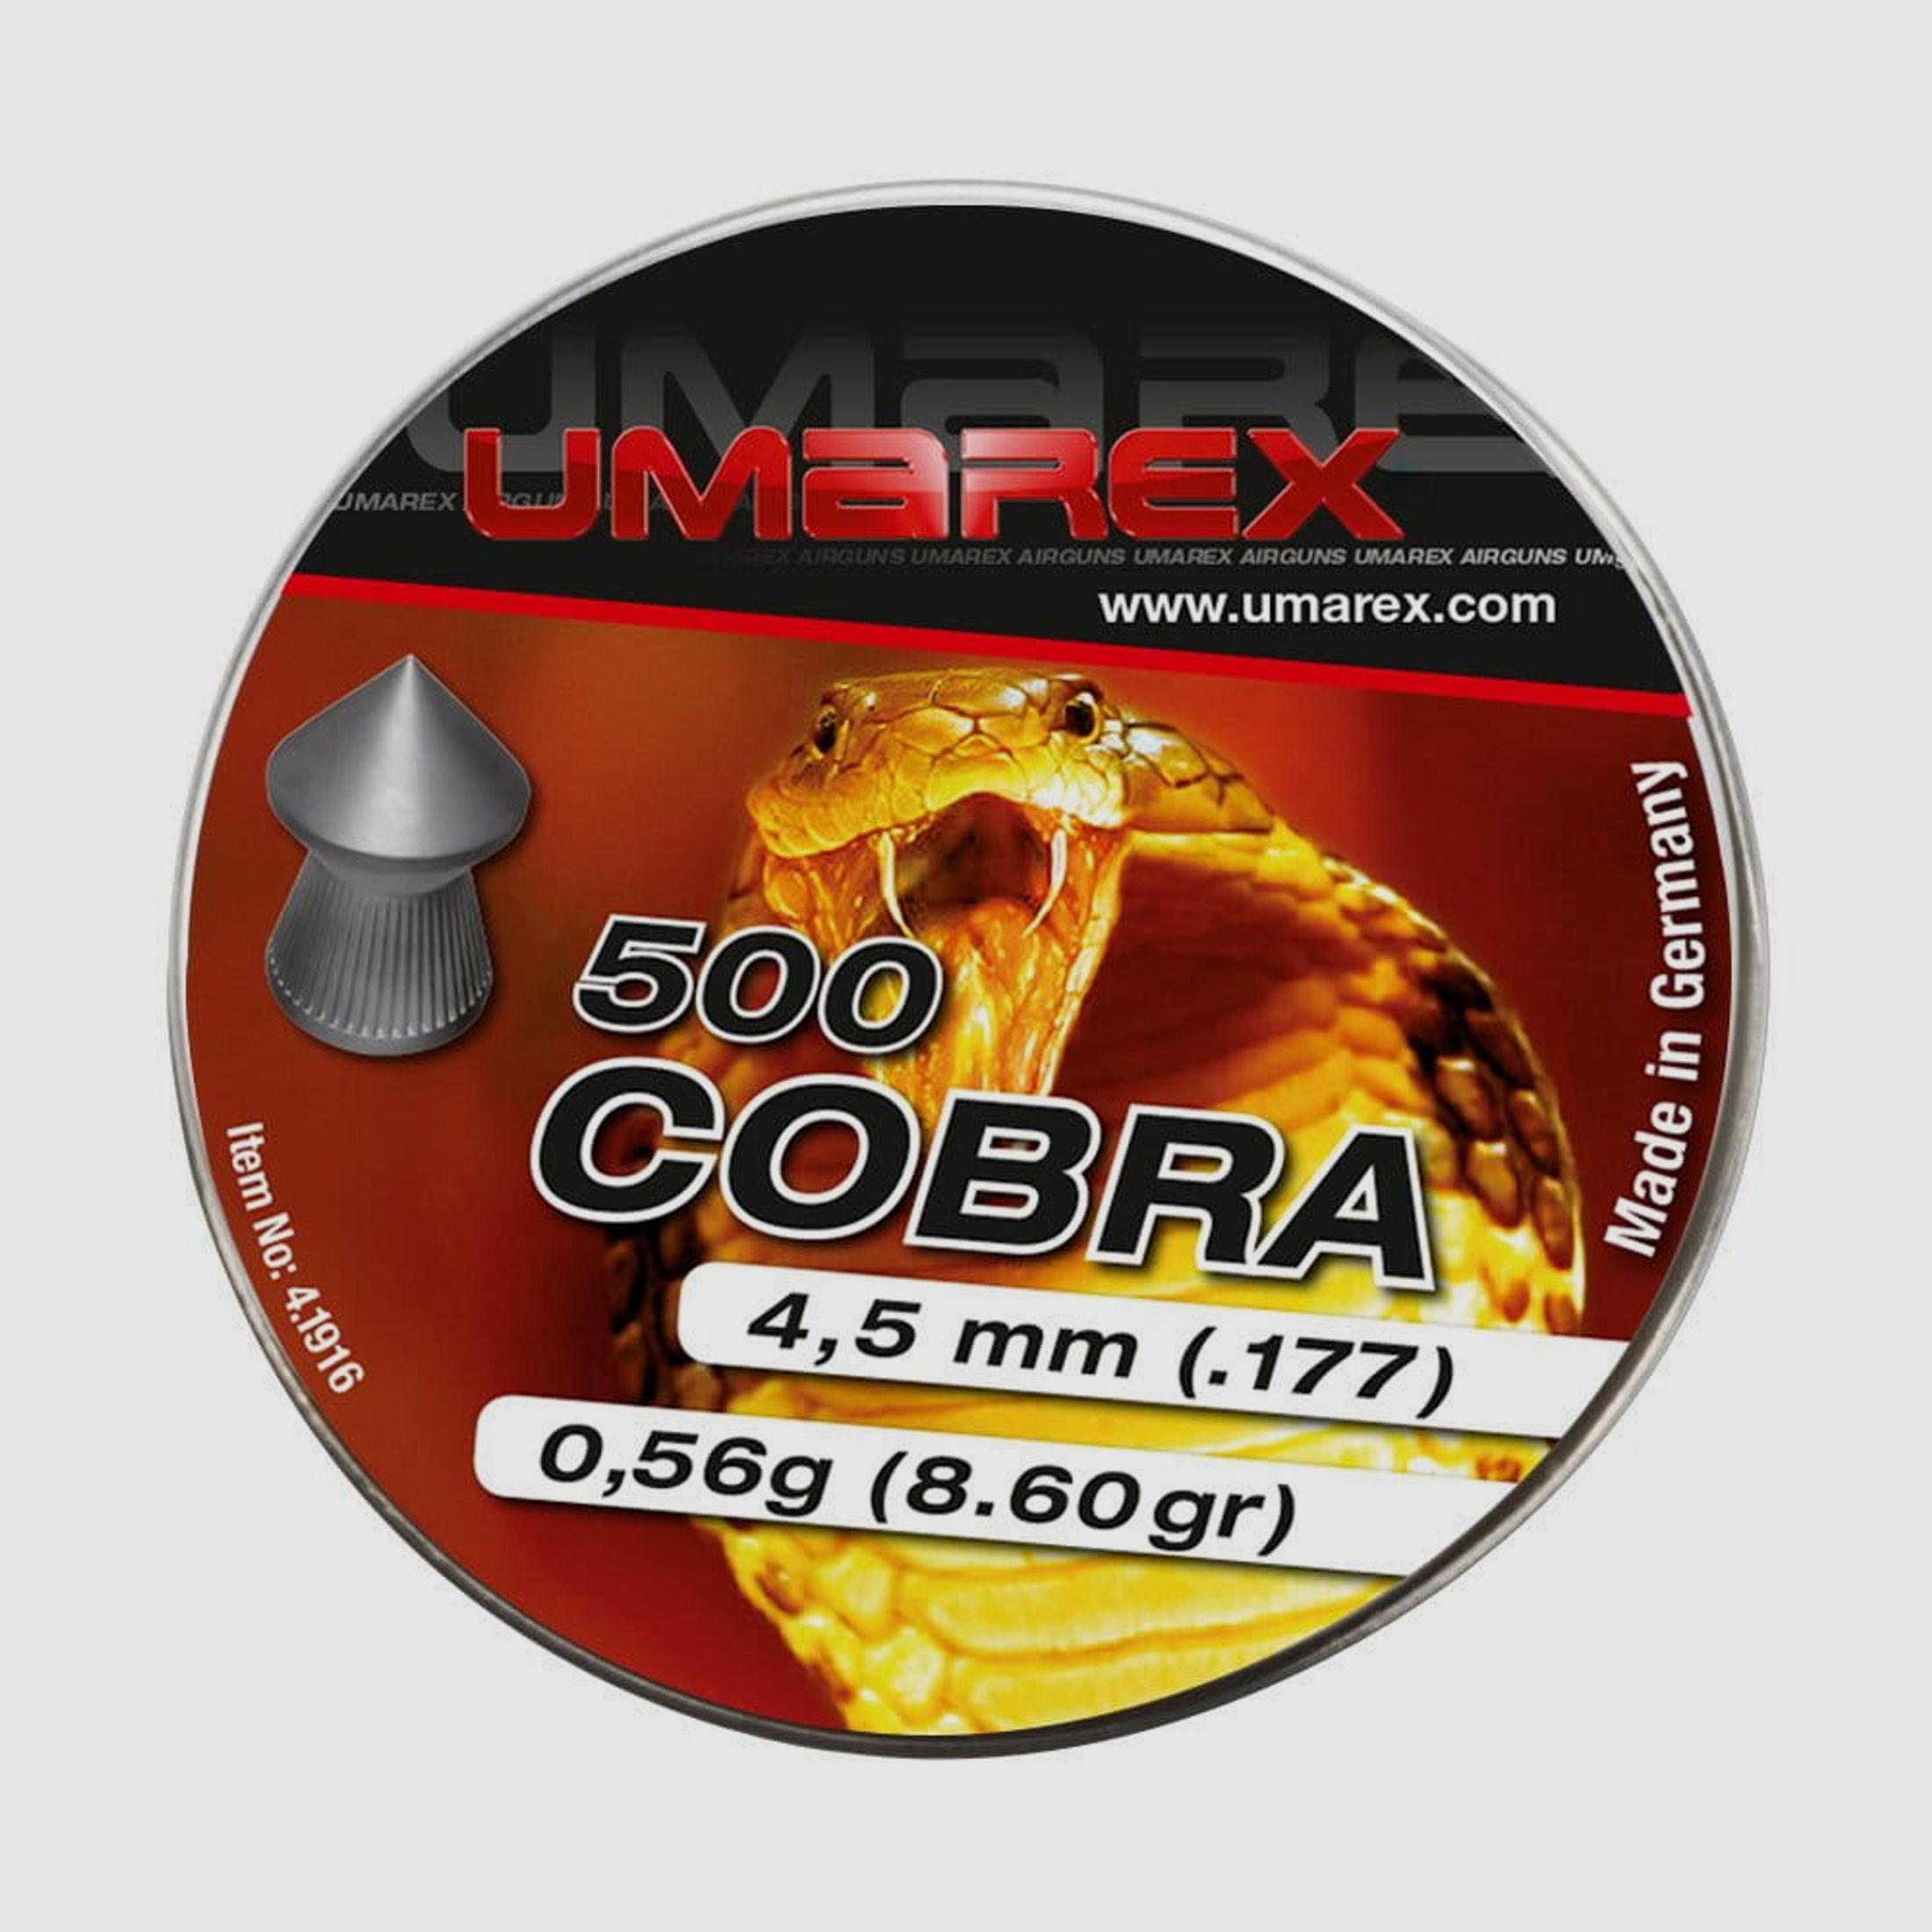 Umarex Cobra Diabolo 4,5 mm - 500 Stk.